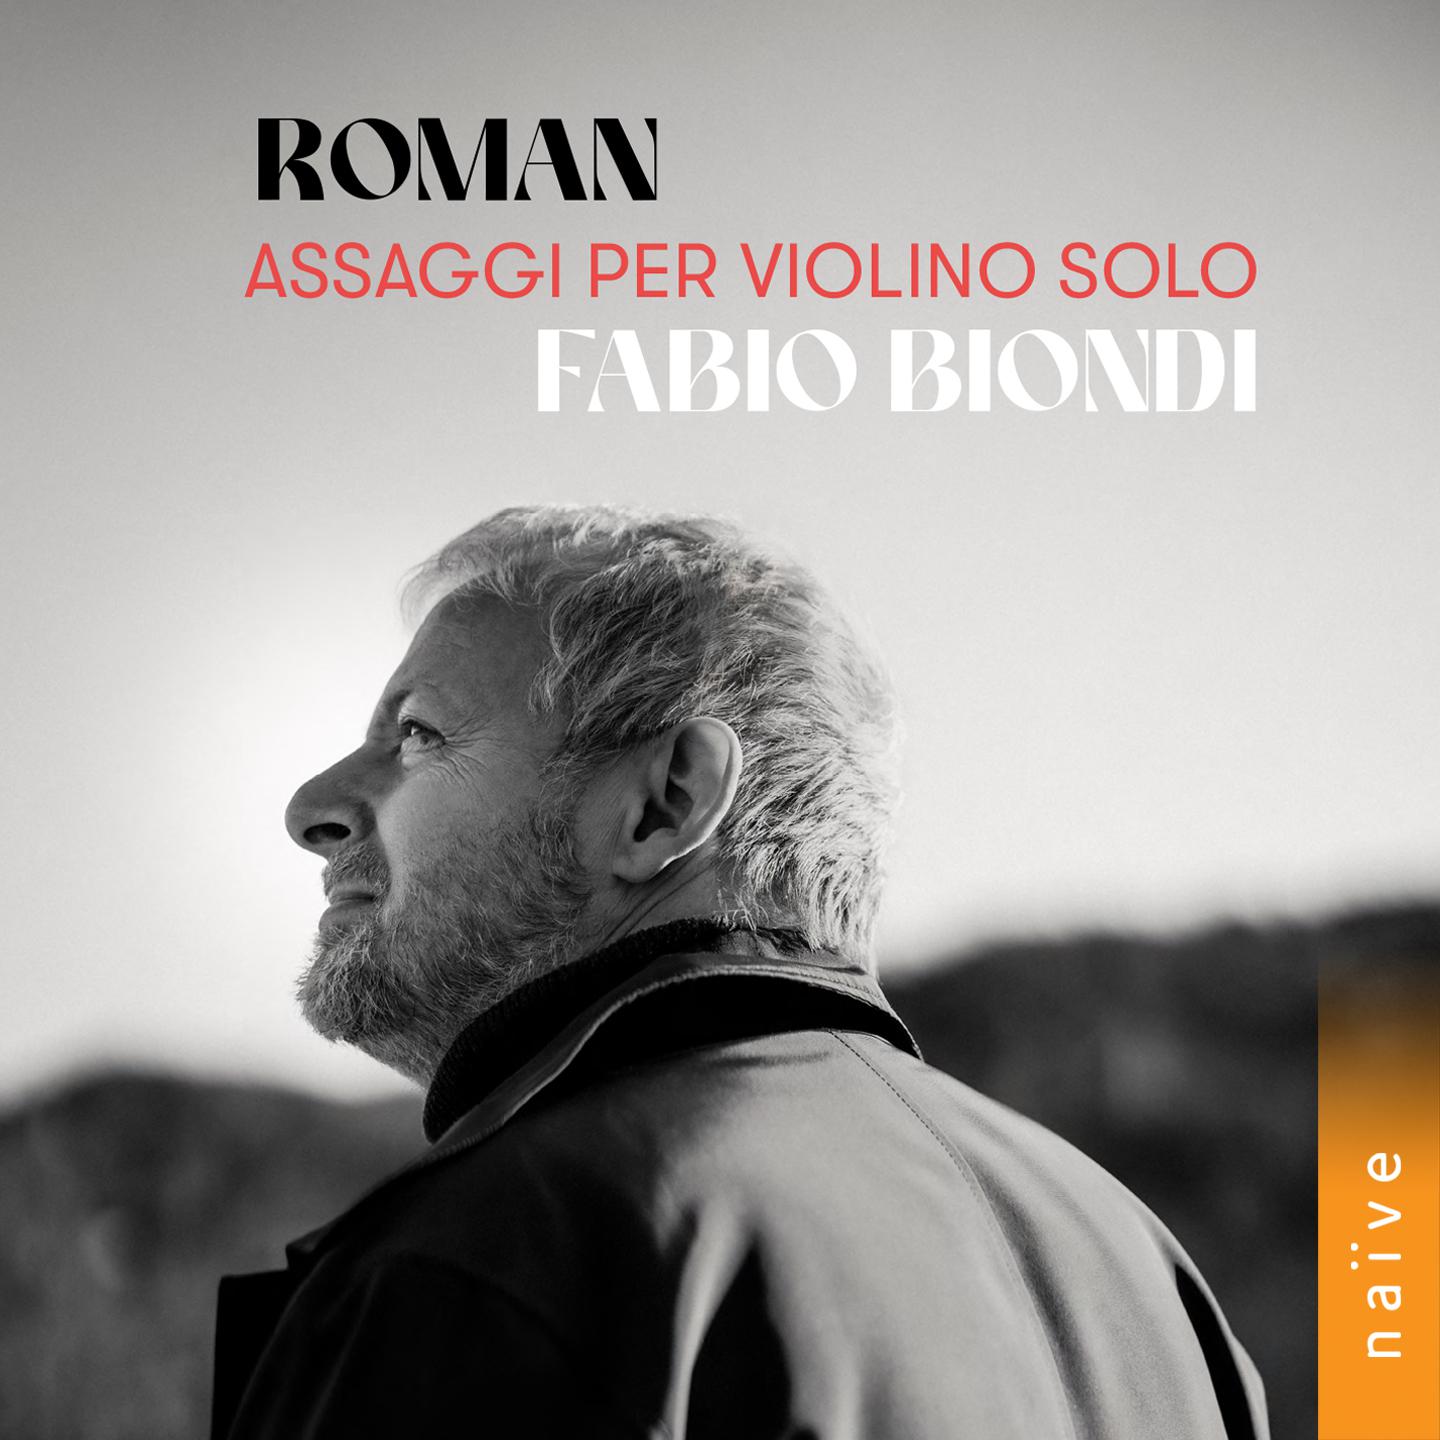 Fabio Biondi - Assaggio per violino solo in A Major, BeRI 301:I.